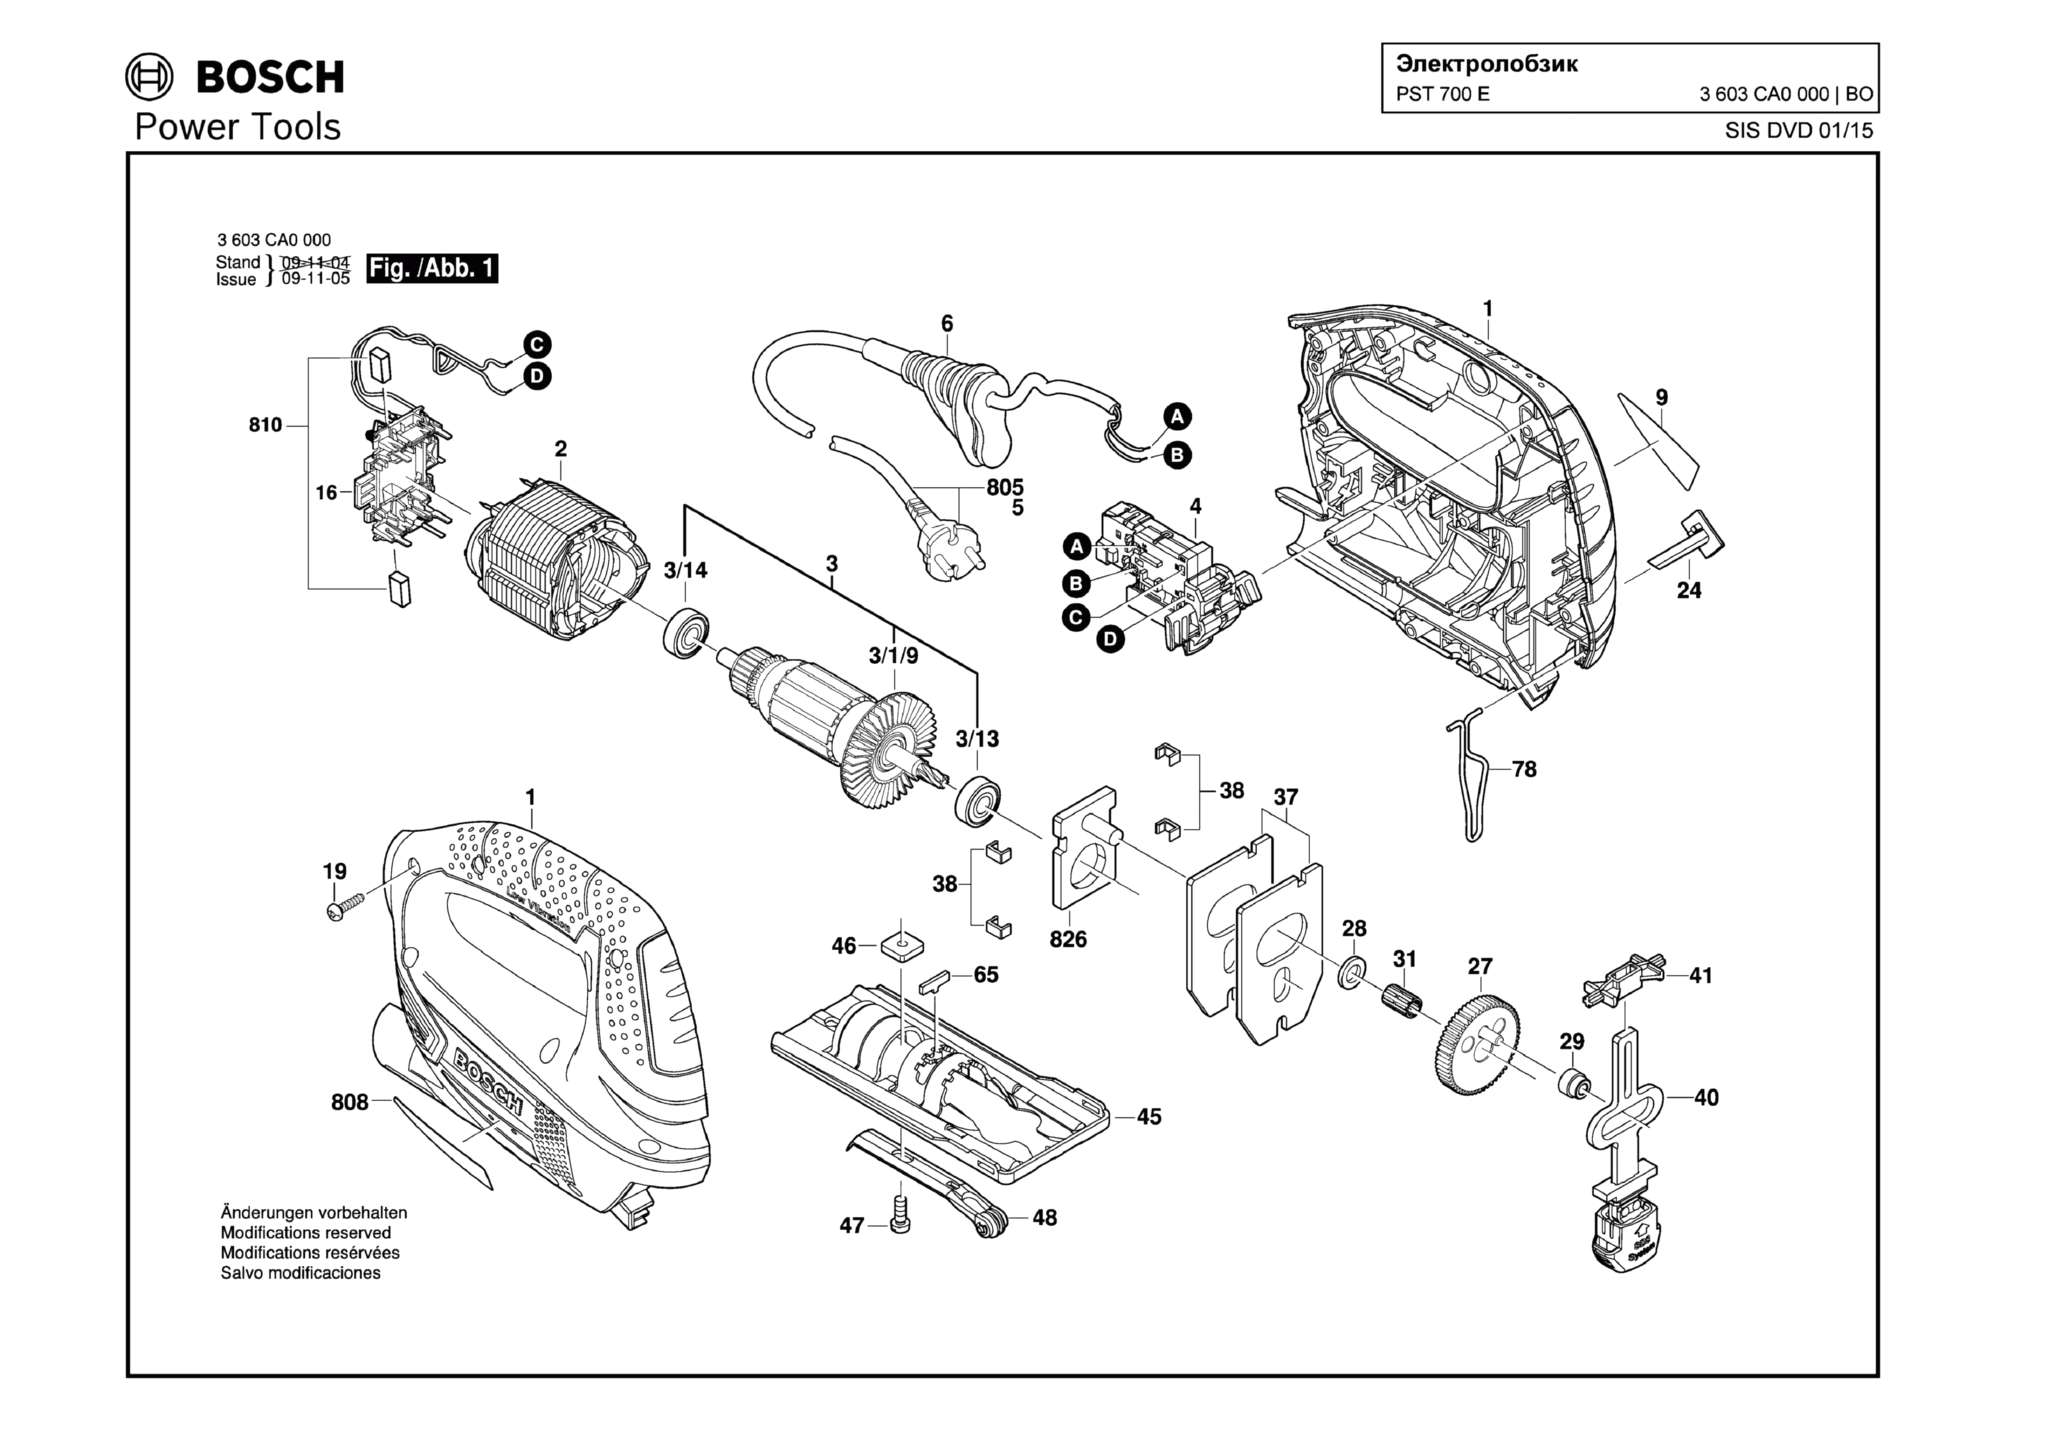 Запчасти, схема и деталировка Bosch PST 700 E (ТИП 3603CA0000)